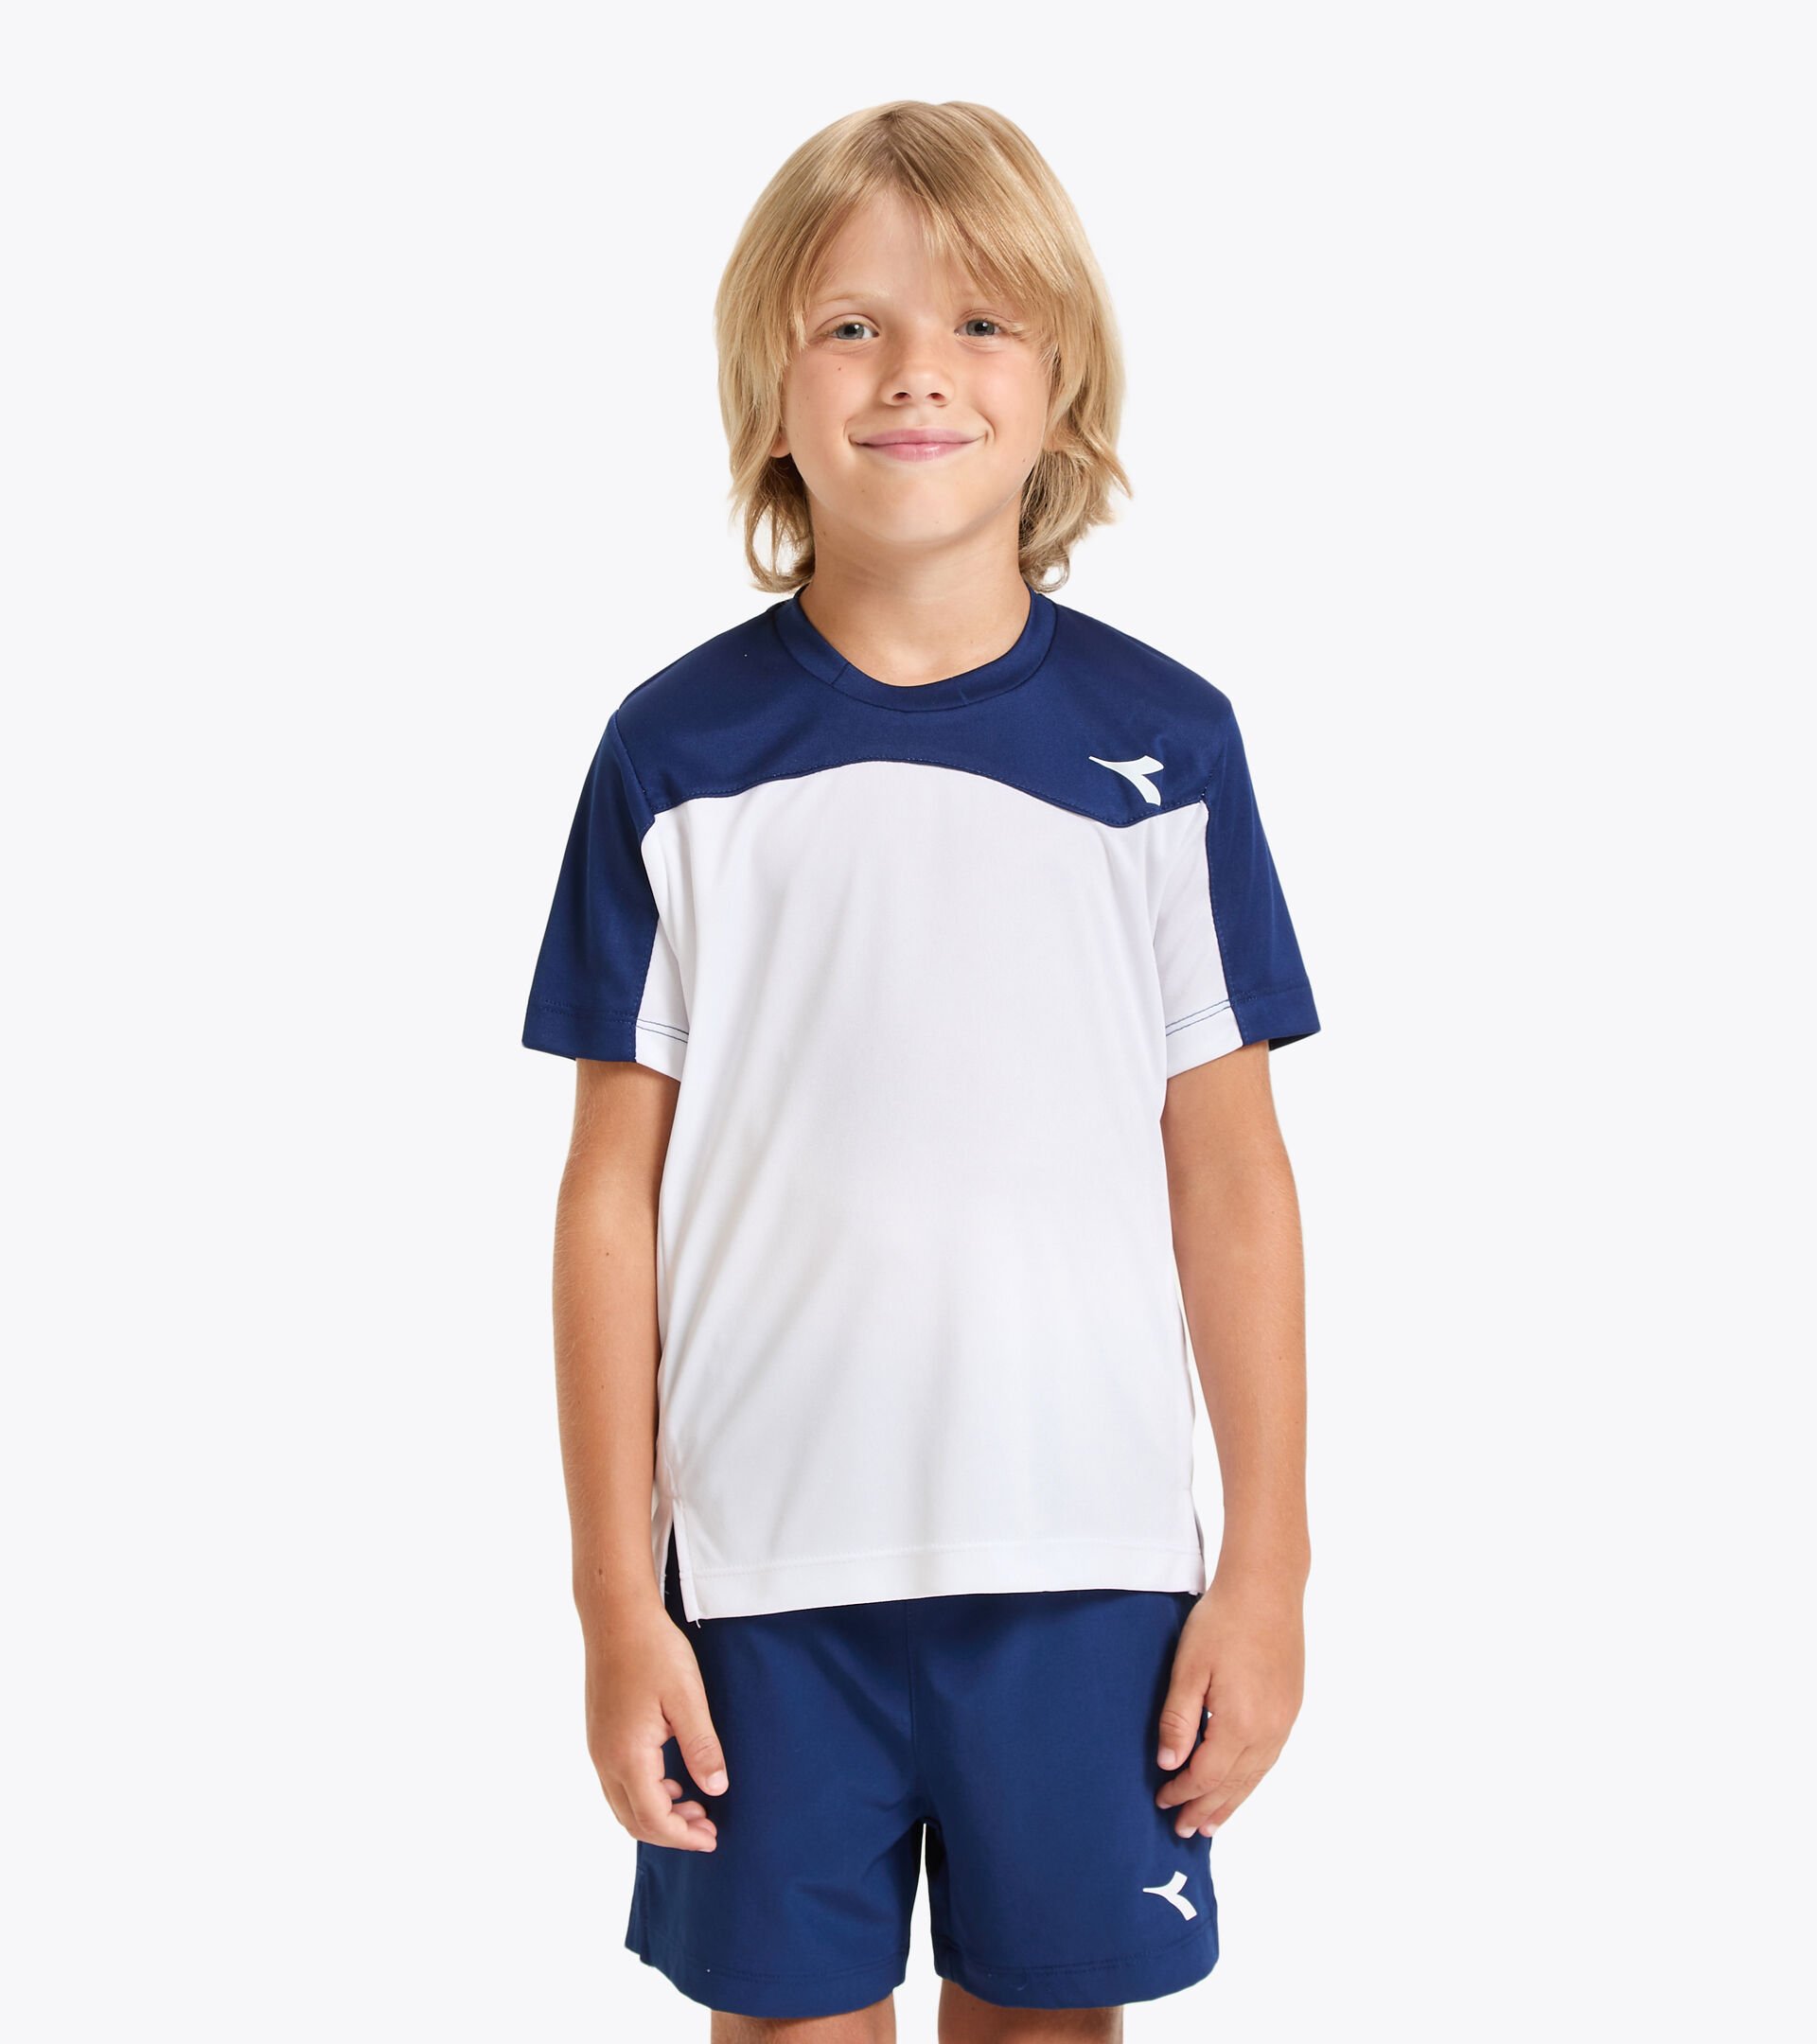 Tennis T-shirt - Junior J. T-SHIRT TEAM SALTIRE NAVY - Diadora